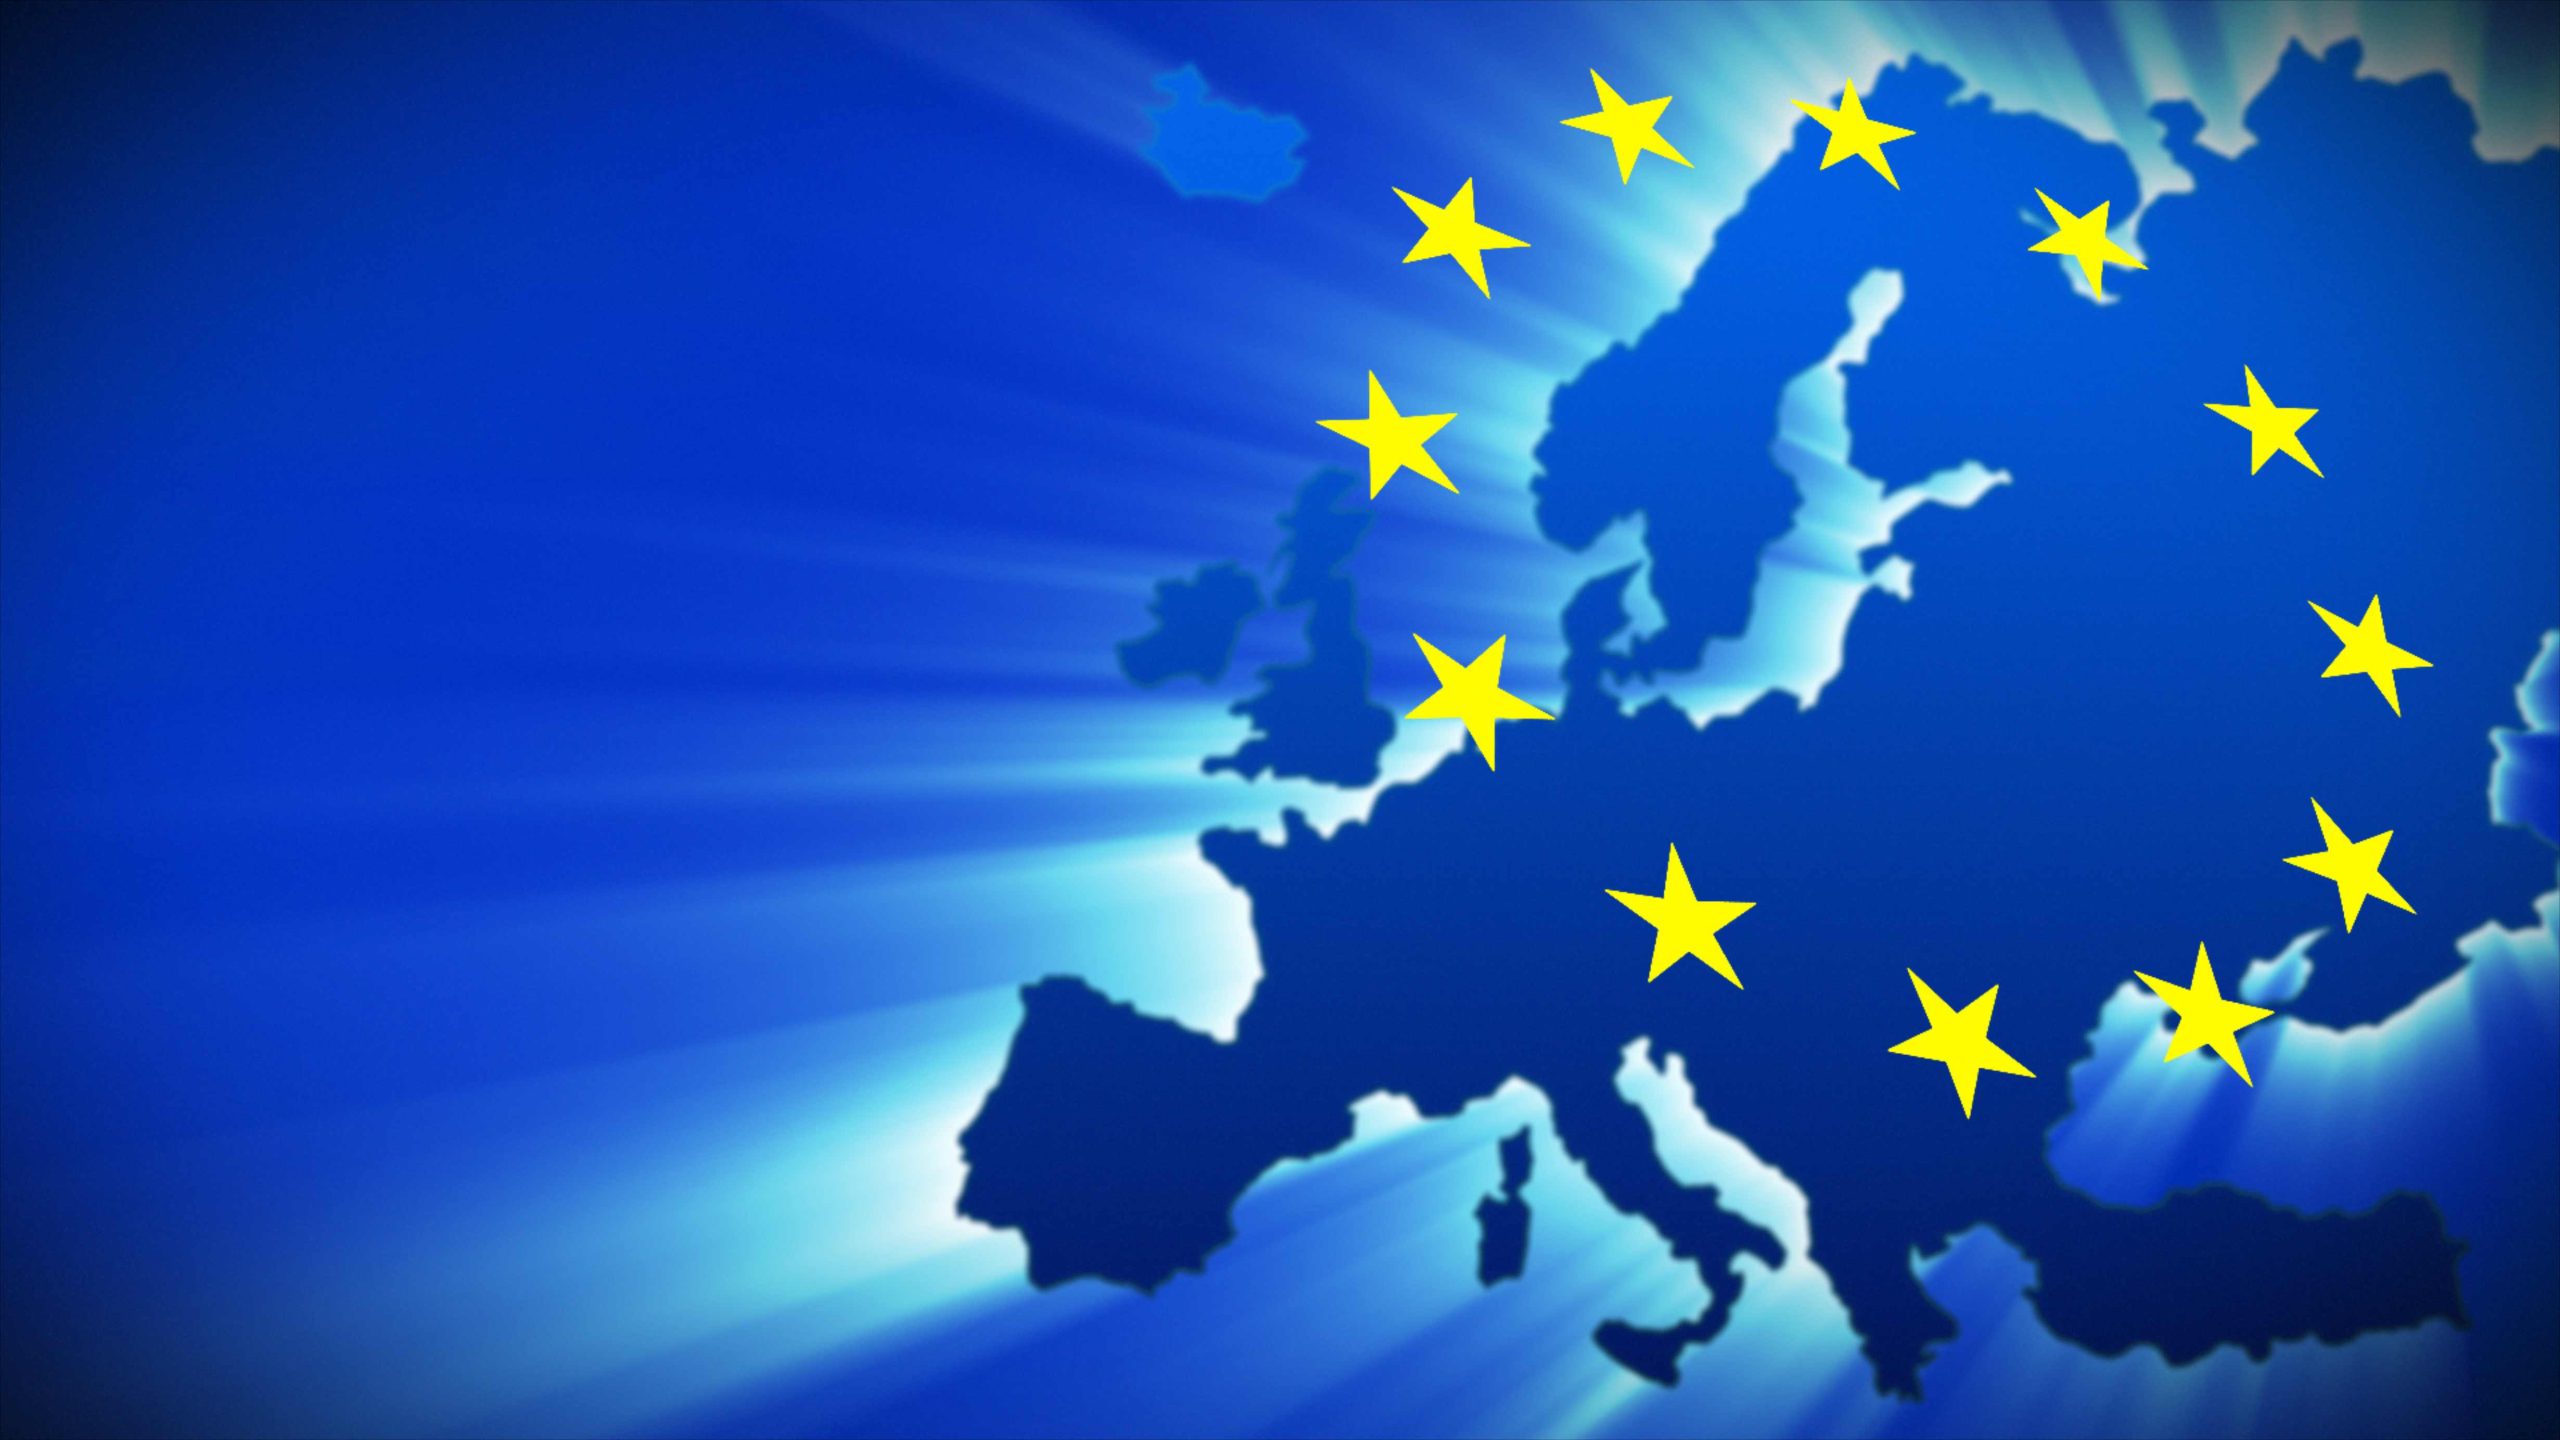 Αναγκαία μια ειδική σχέση της Ελλάδας εντός ΕΕ και Ευρωζώνης την επαύριον της πανδημίας